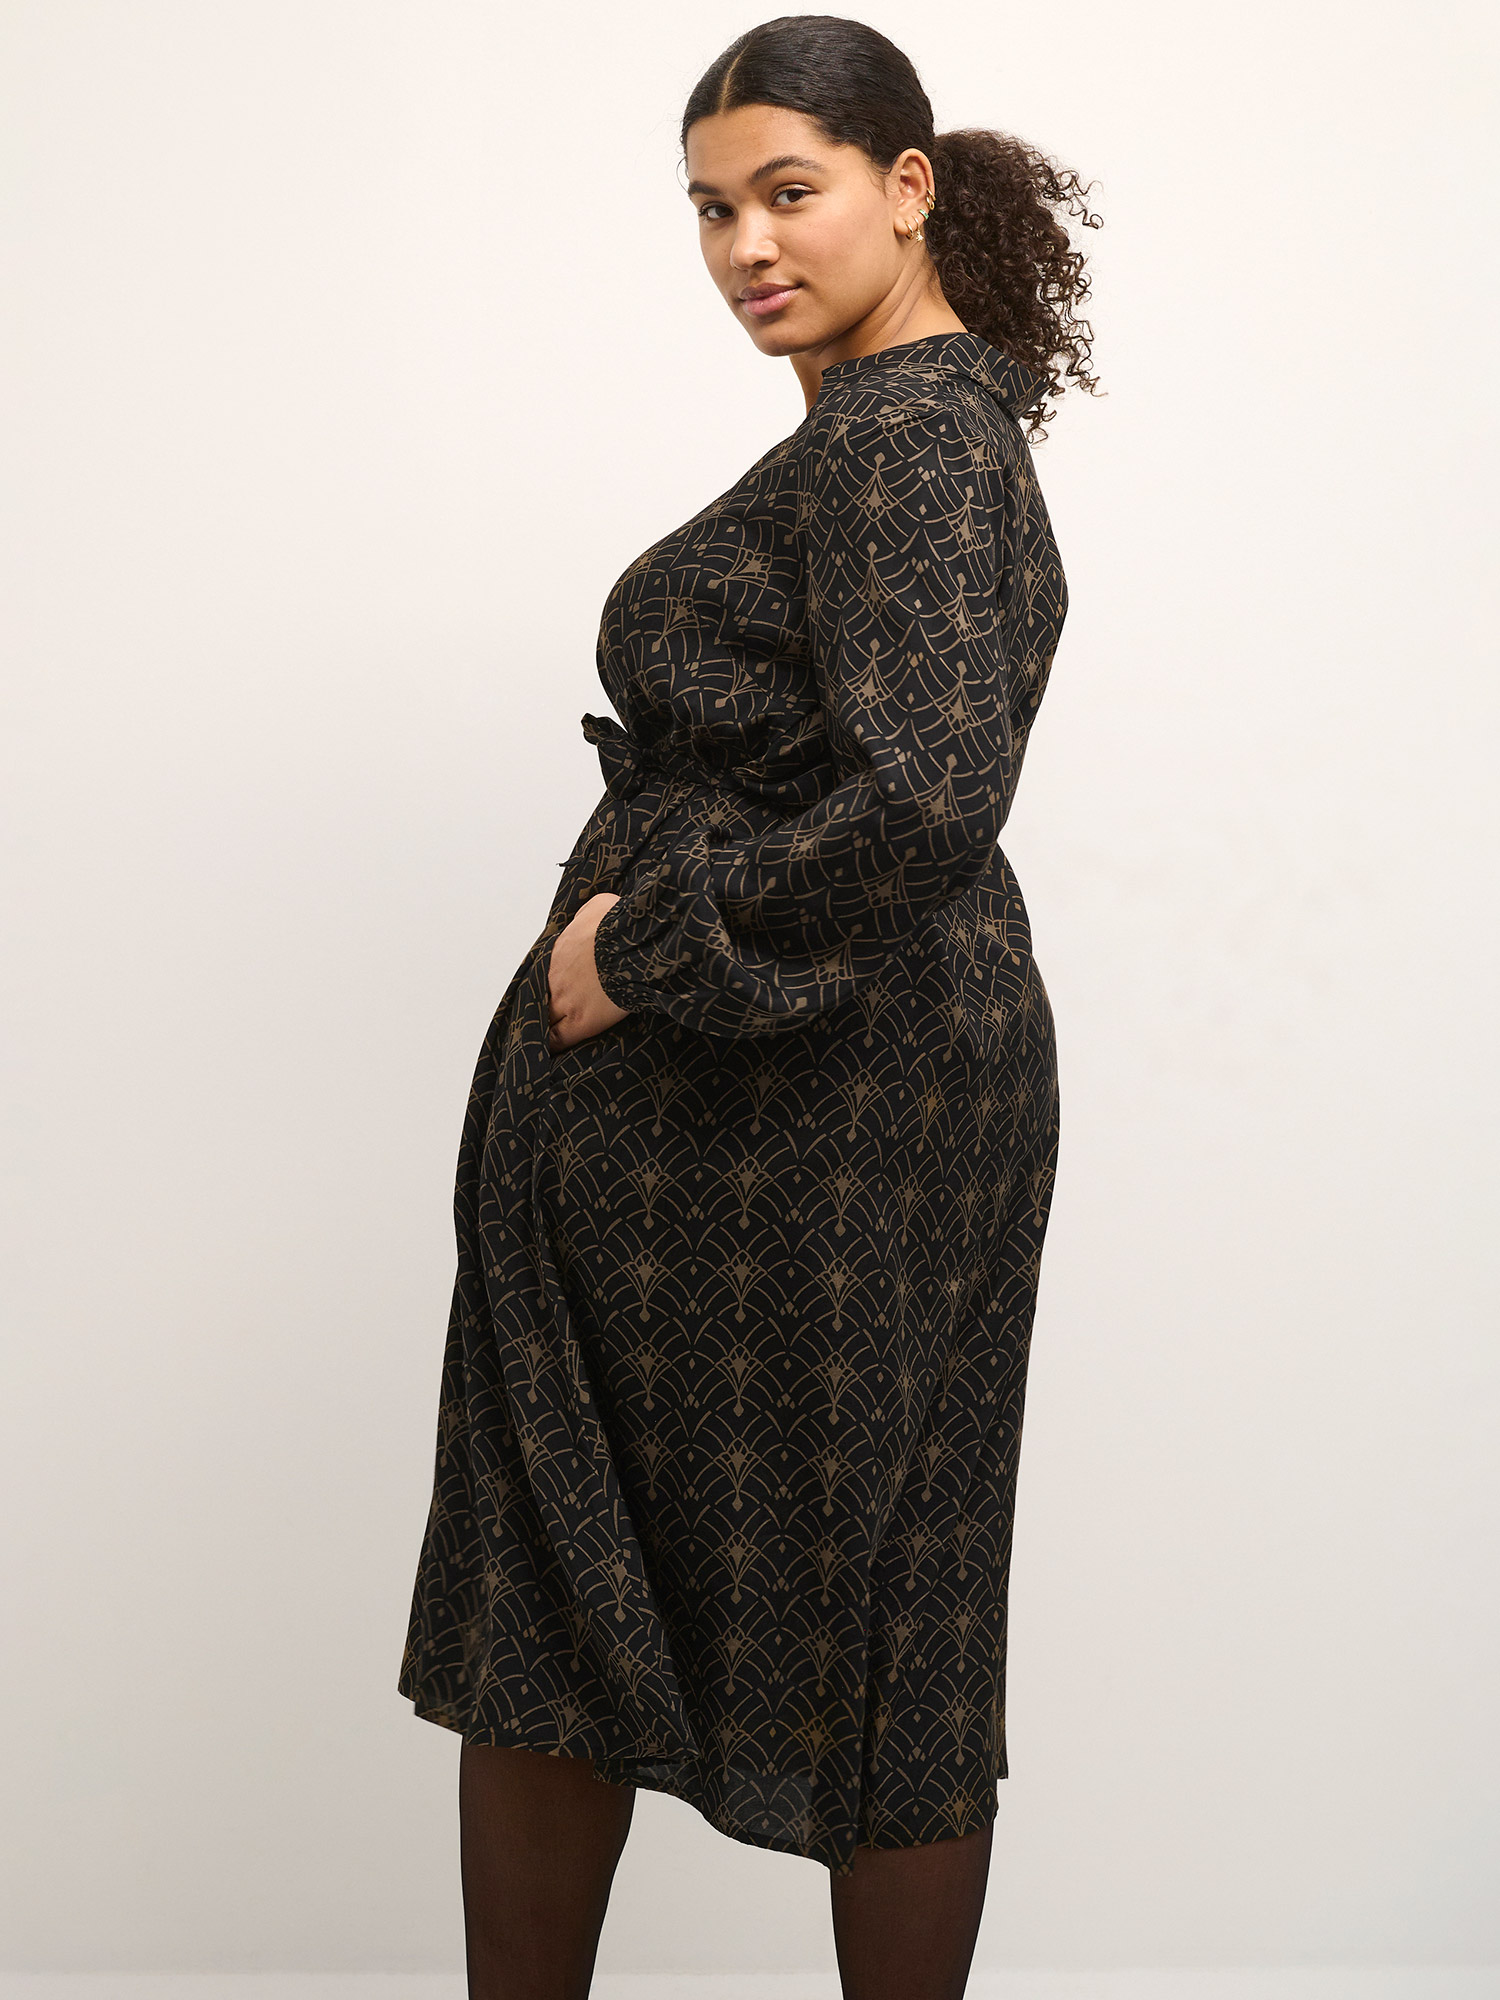 MIRANA - Sort viskose skjorte kjole med brunt mønster fra Kaffe Curve